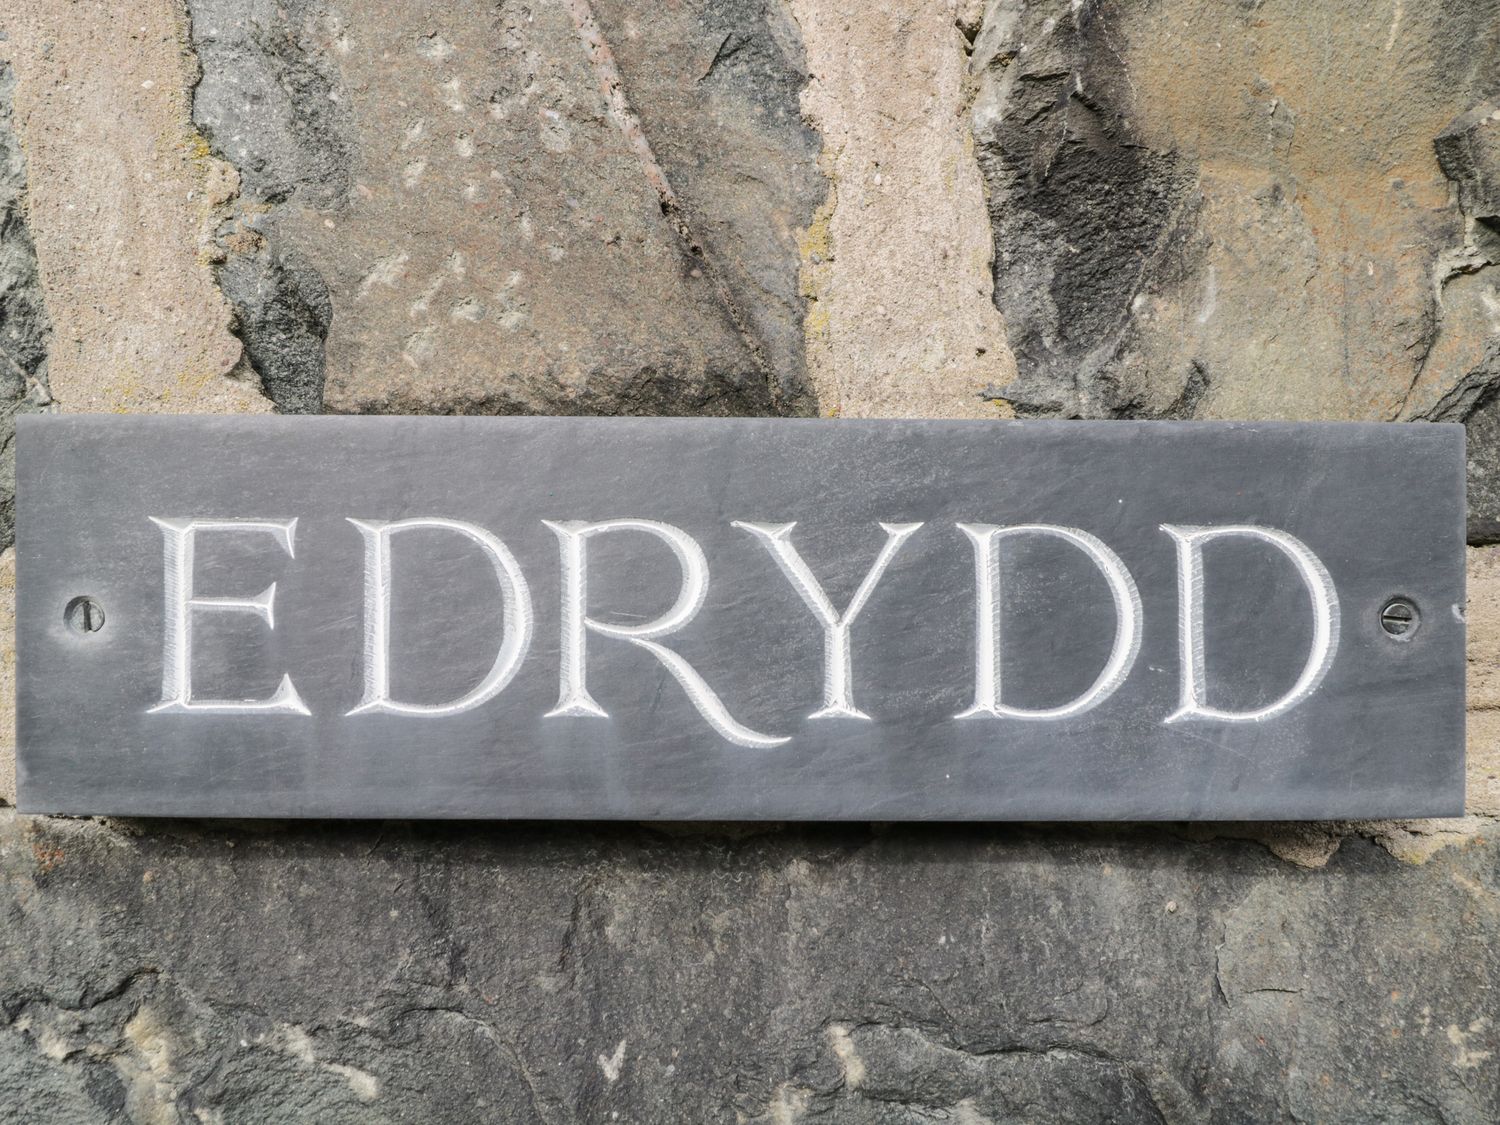 Edrydd, Harlech